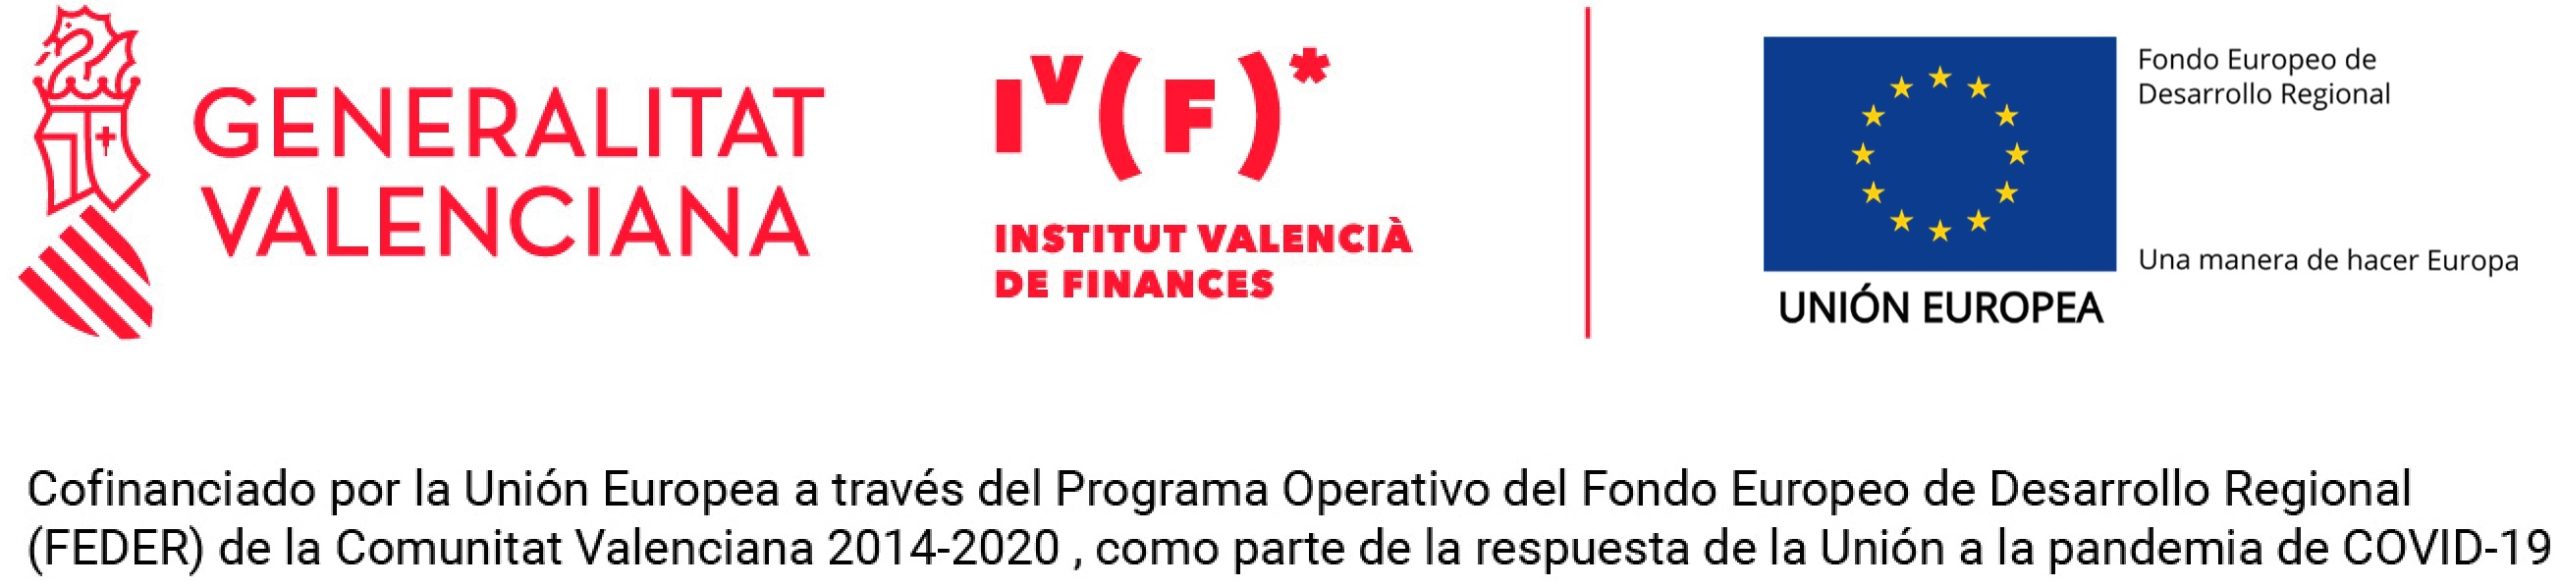 Prestito cofinanziato dall'Unione Europea attraverso il Programma Operativo del Fondo di Sviluppo Regionale (FEDER) della Comunità Valenciana 2014-2020